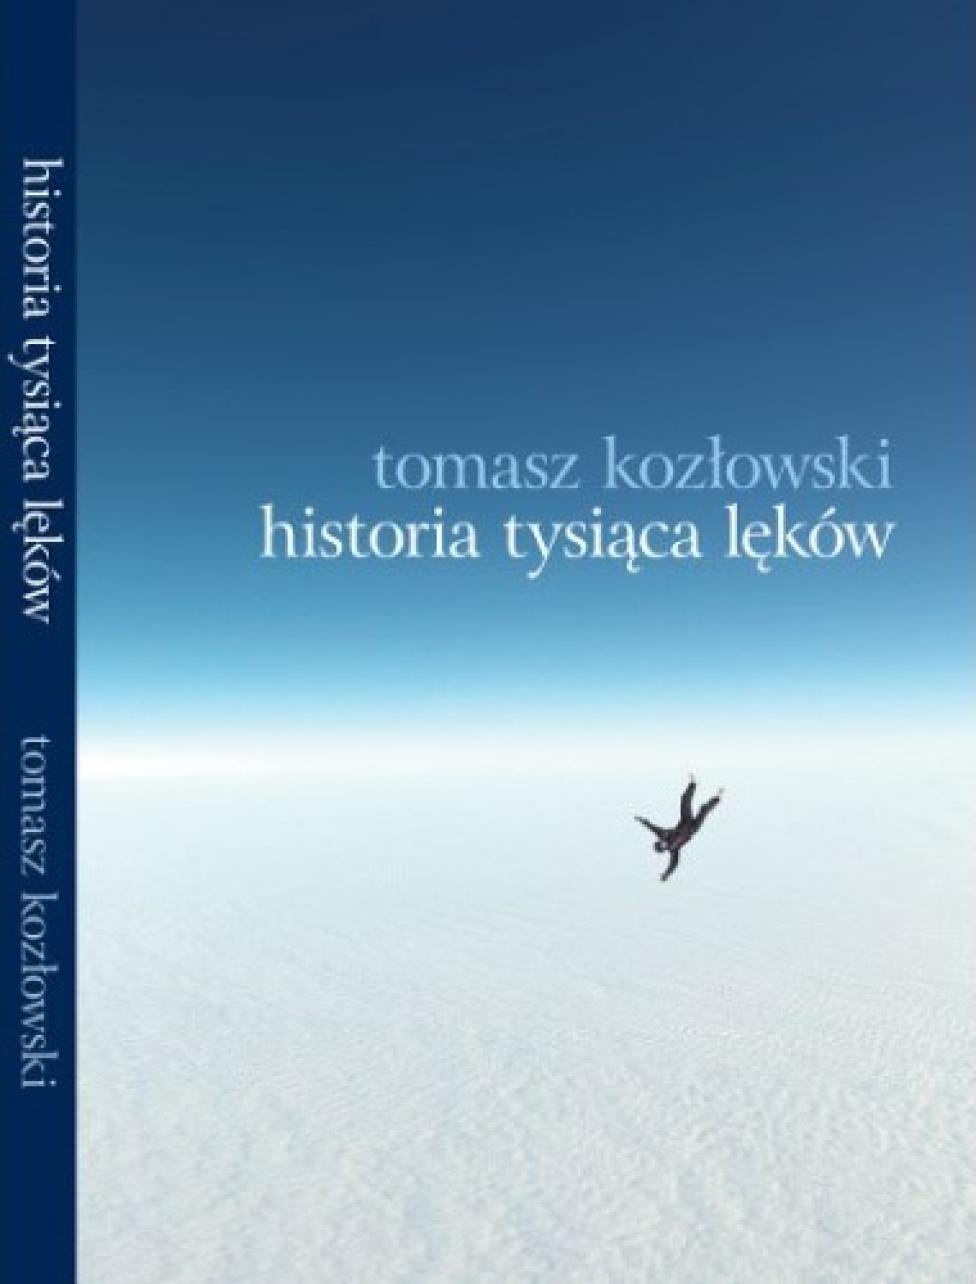 Książka "Historia tysiąca lęków" (fot. historiaskoku.pl)